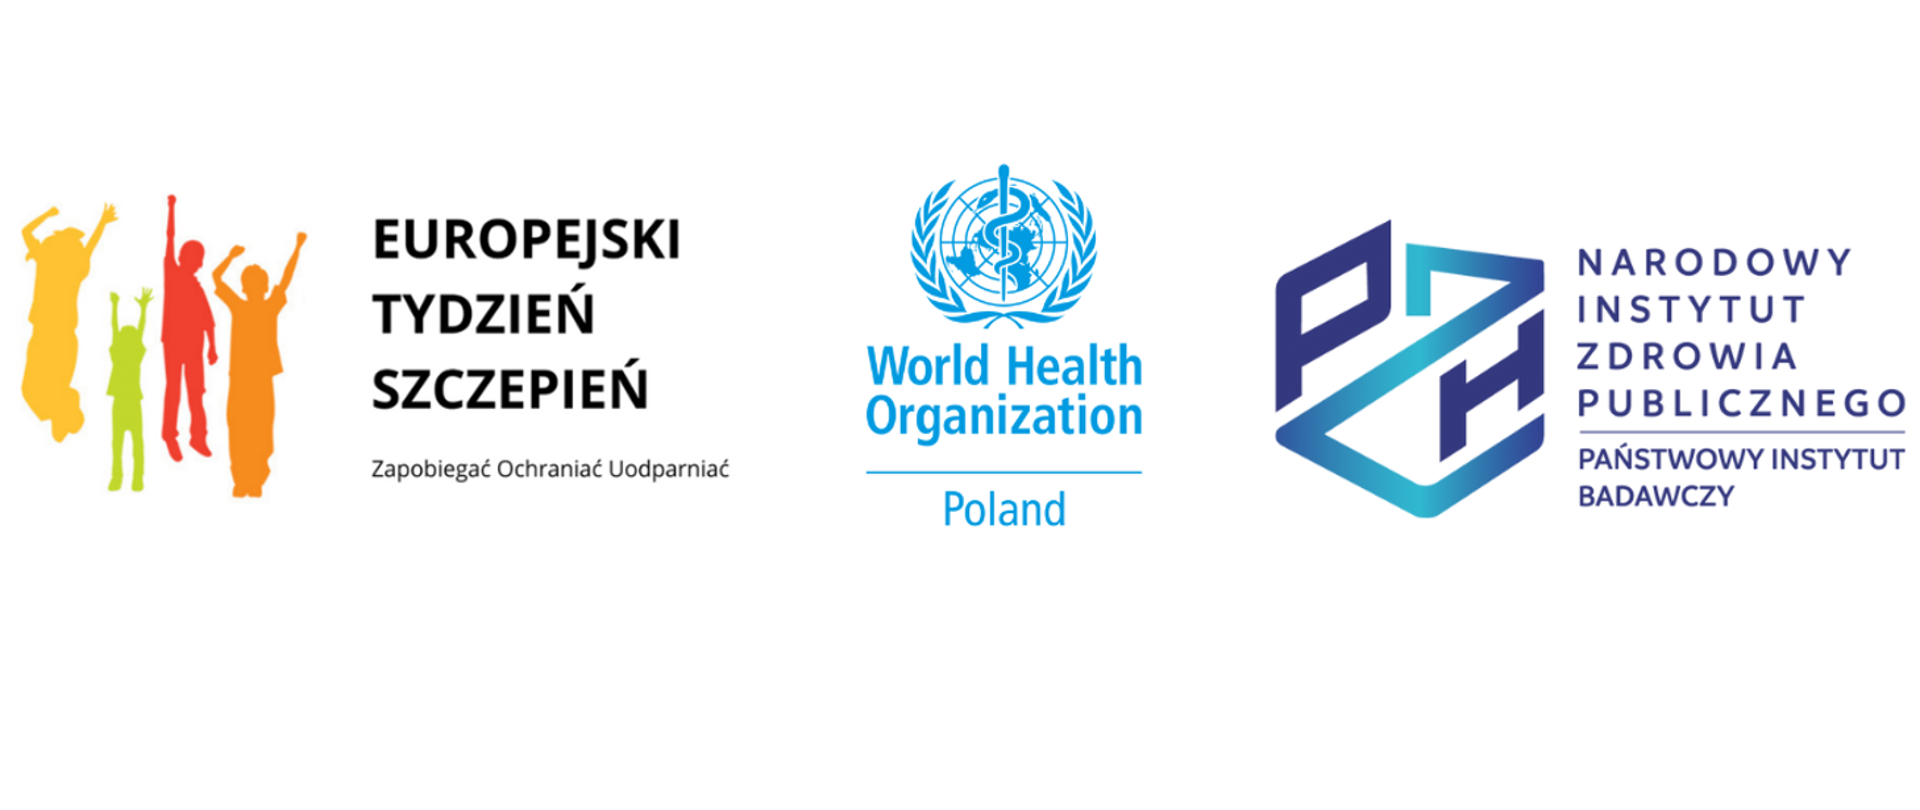 Logo akcji Europejski Tydzień Szczepień, Logo WHO, Logo Narodowego Instytutu Zdrowia Publicznego PZH